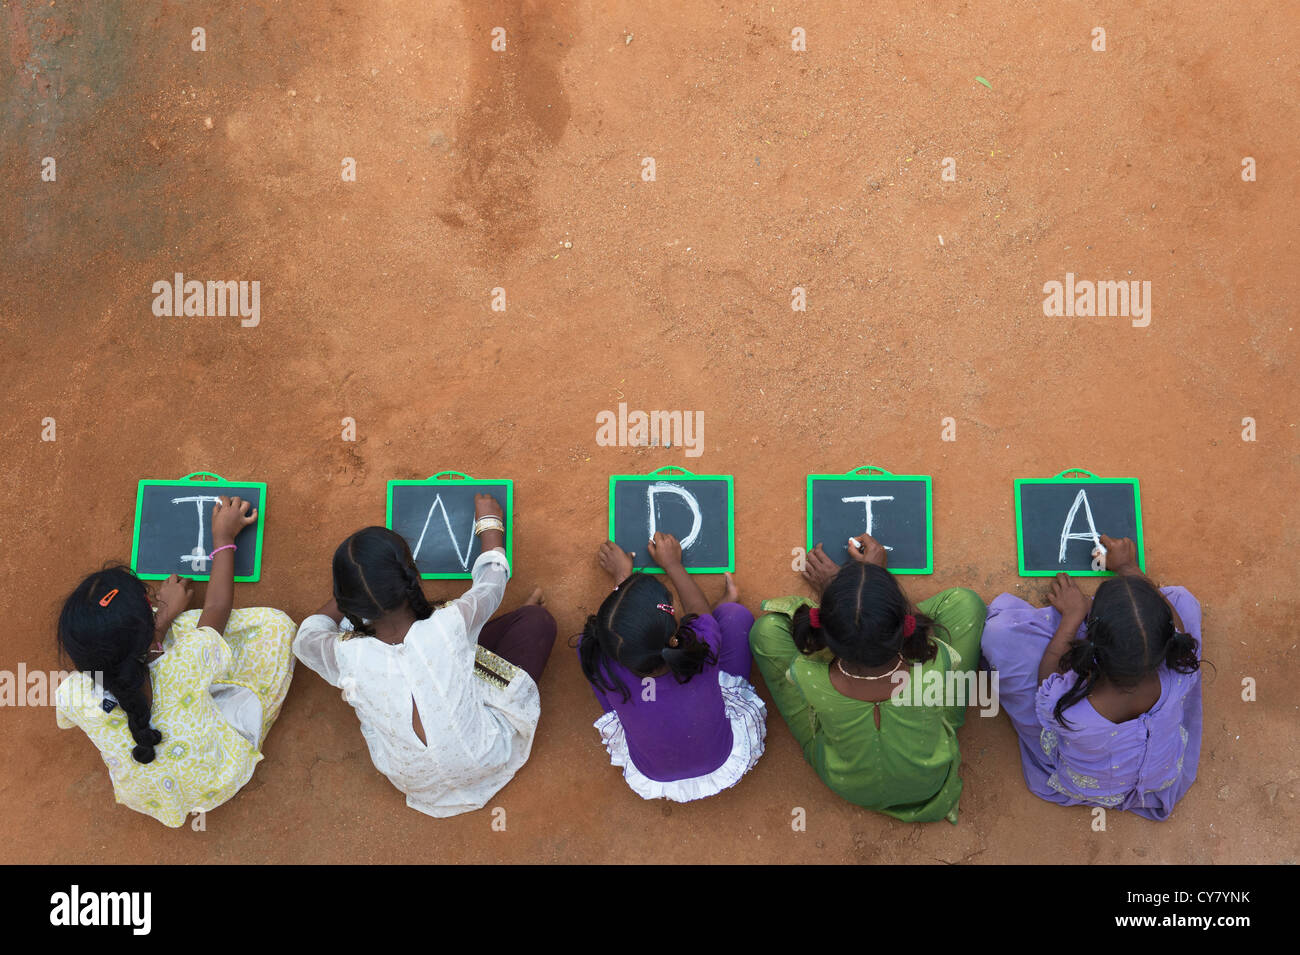 Fünf Mädchen, Indianerdorf mit Indien geschrieben auf einer Tafel in einem indischen Dorf. Andhra Pradesh, Indien. Textfreiraum Stockfoto